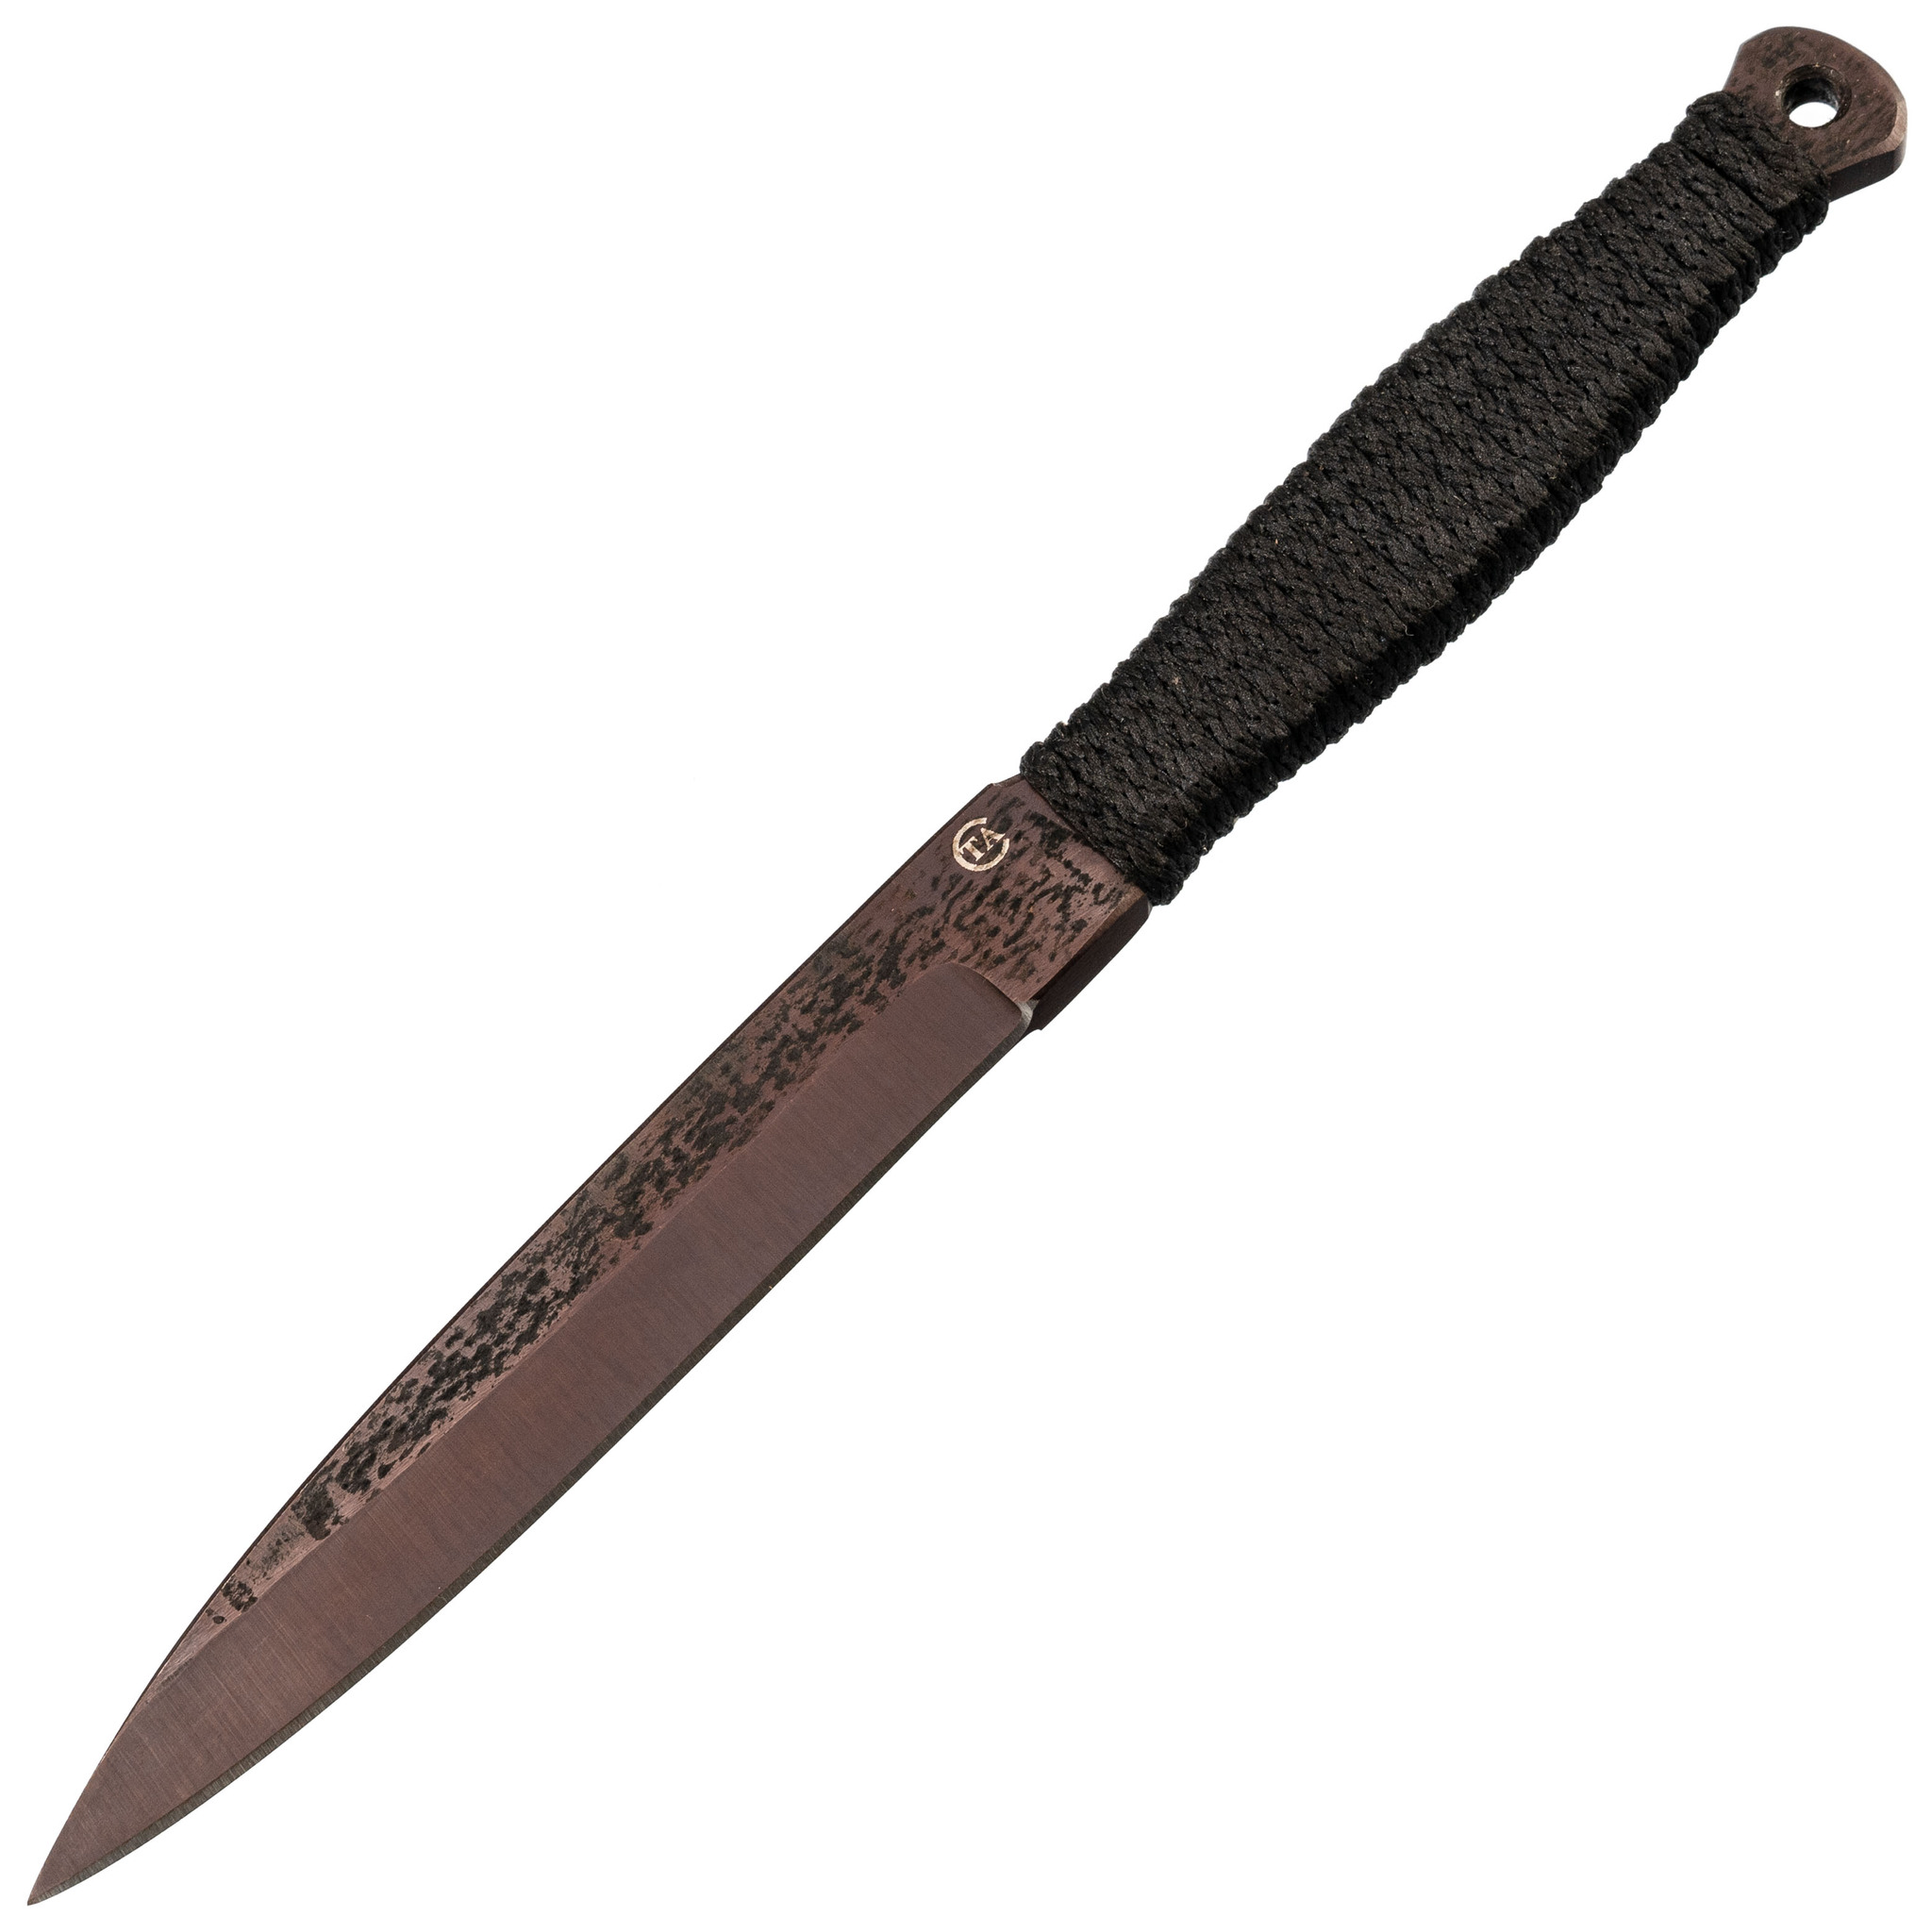 Спортивный нож «Горец-3М», сталь 65Г набор спортивных ножей юст 1 комплект 3 шт сталь 65г